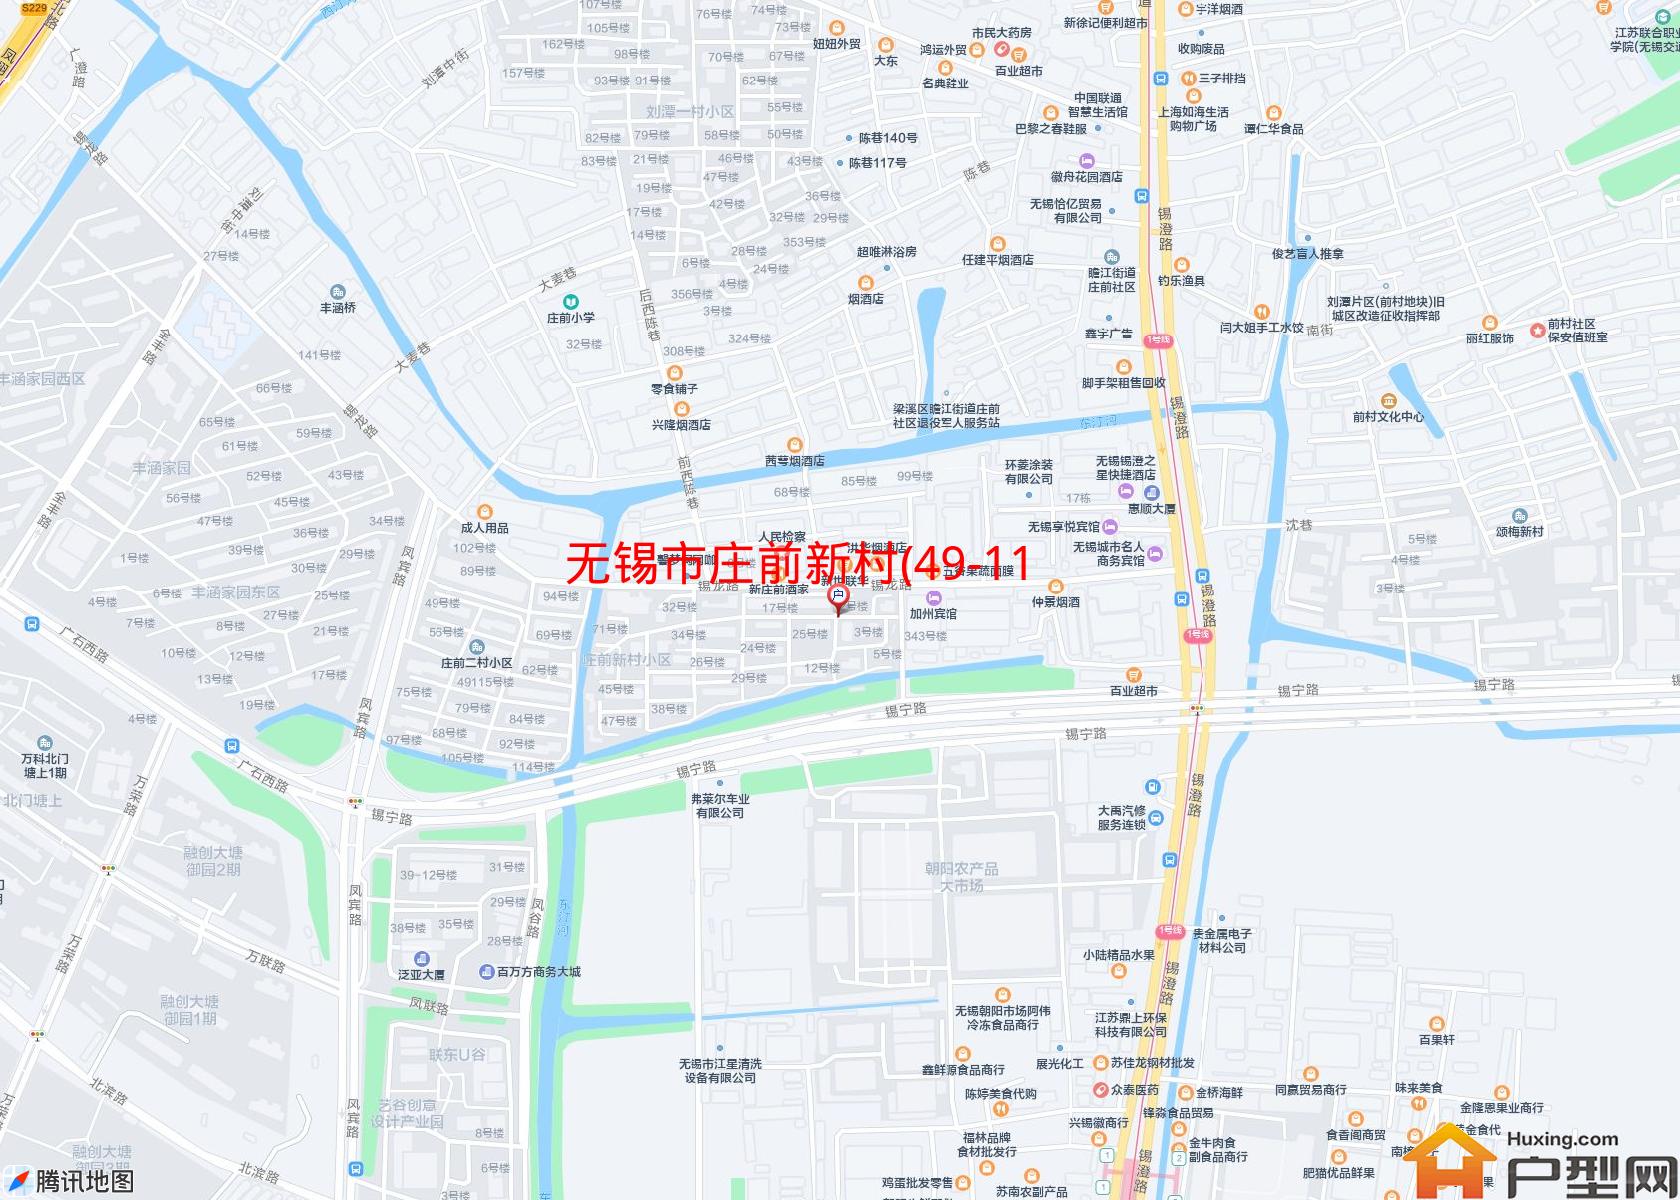 庄前新村(49-115号)小区 - 户型网